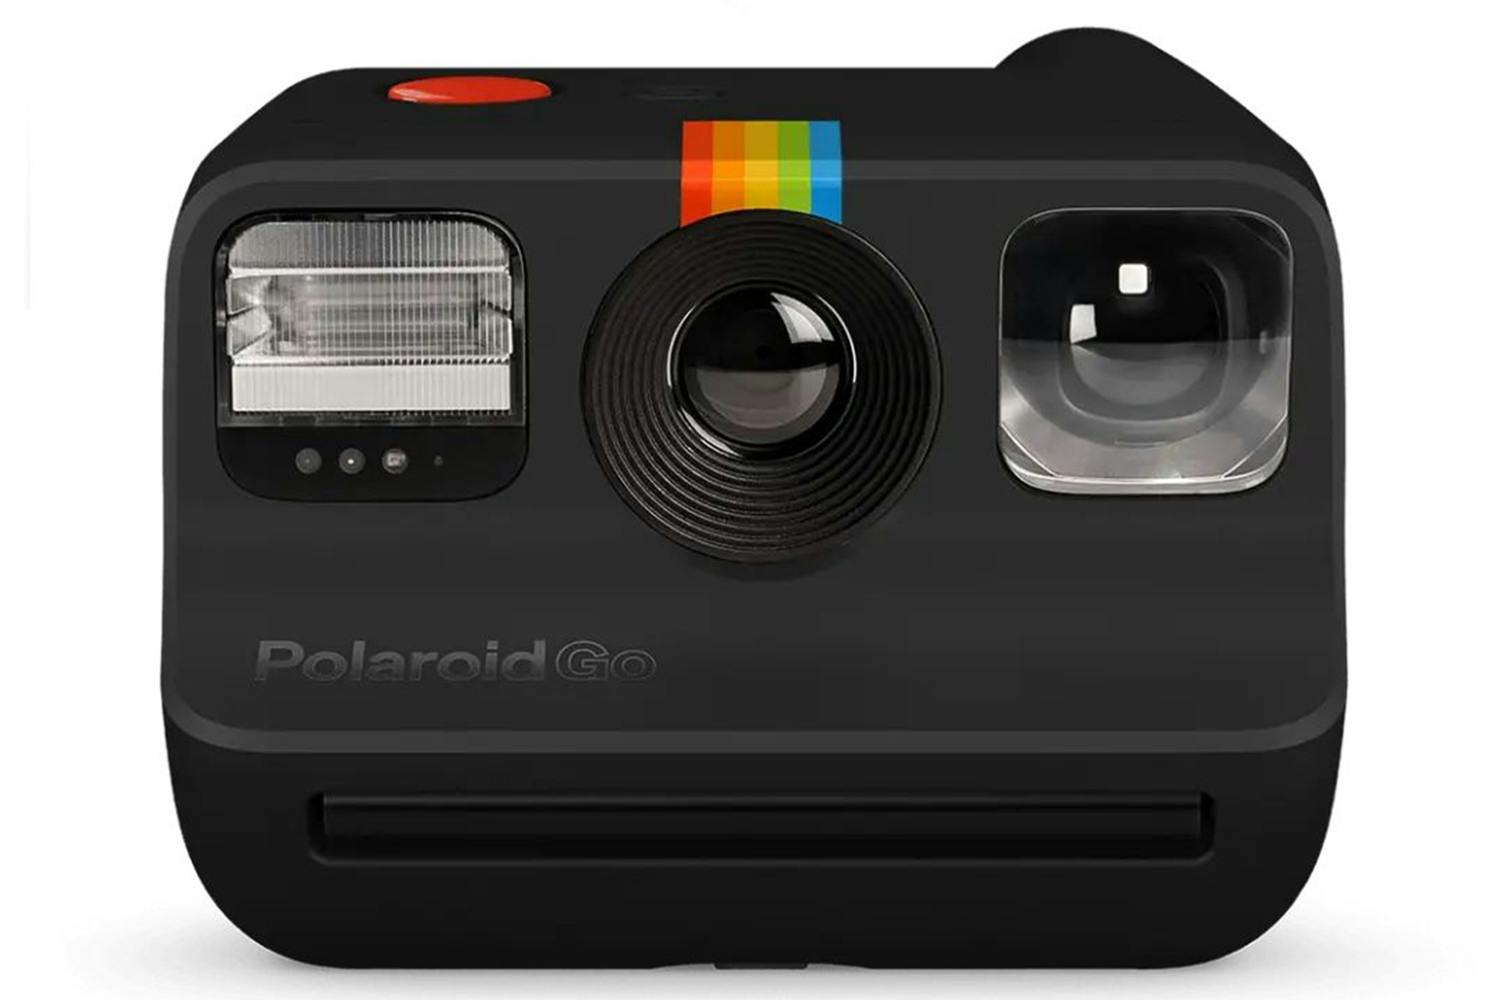 How to use the Polaroid Go camera 